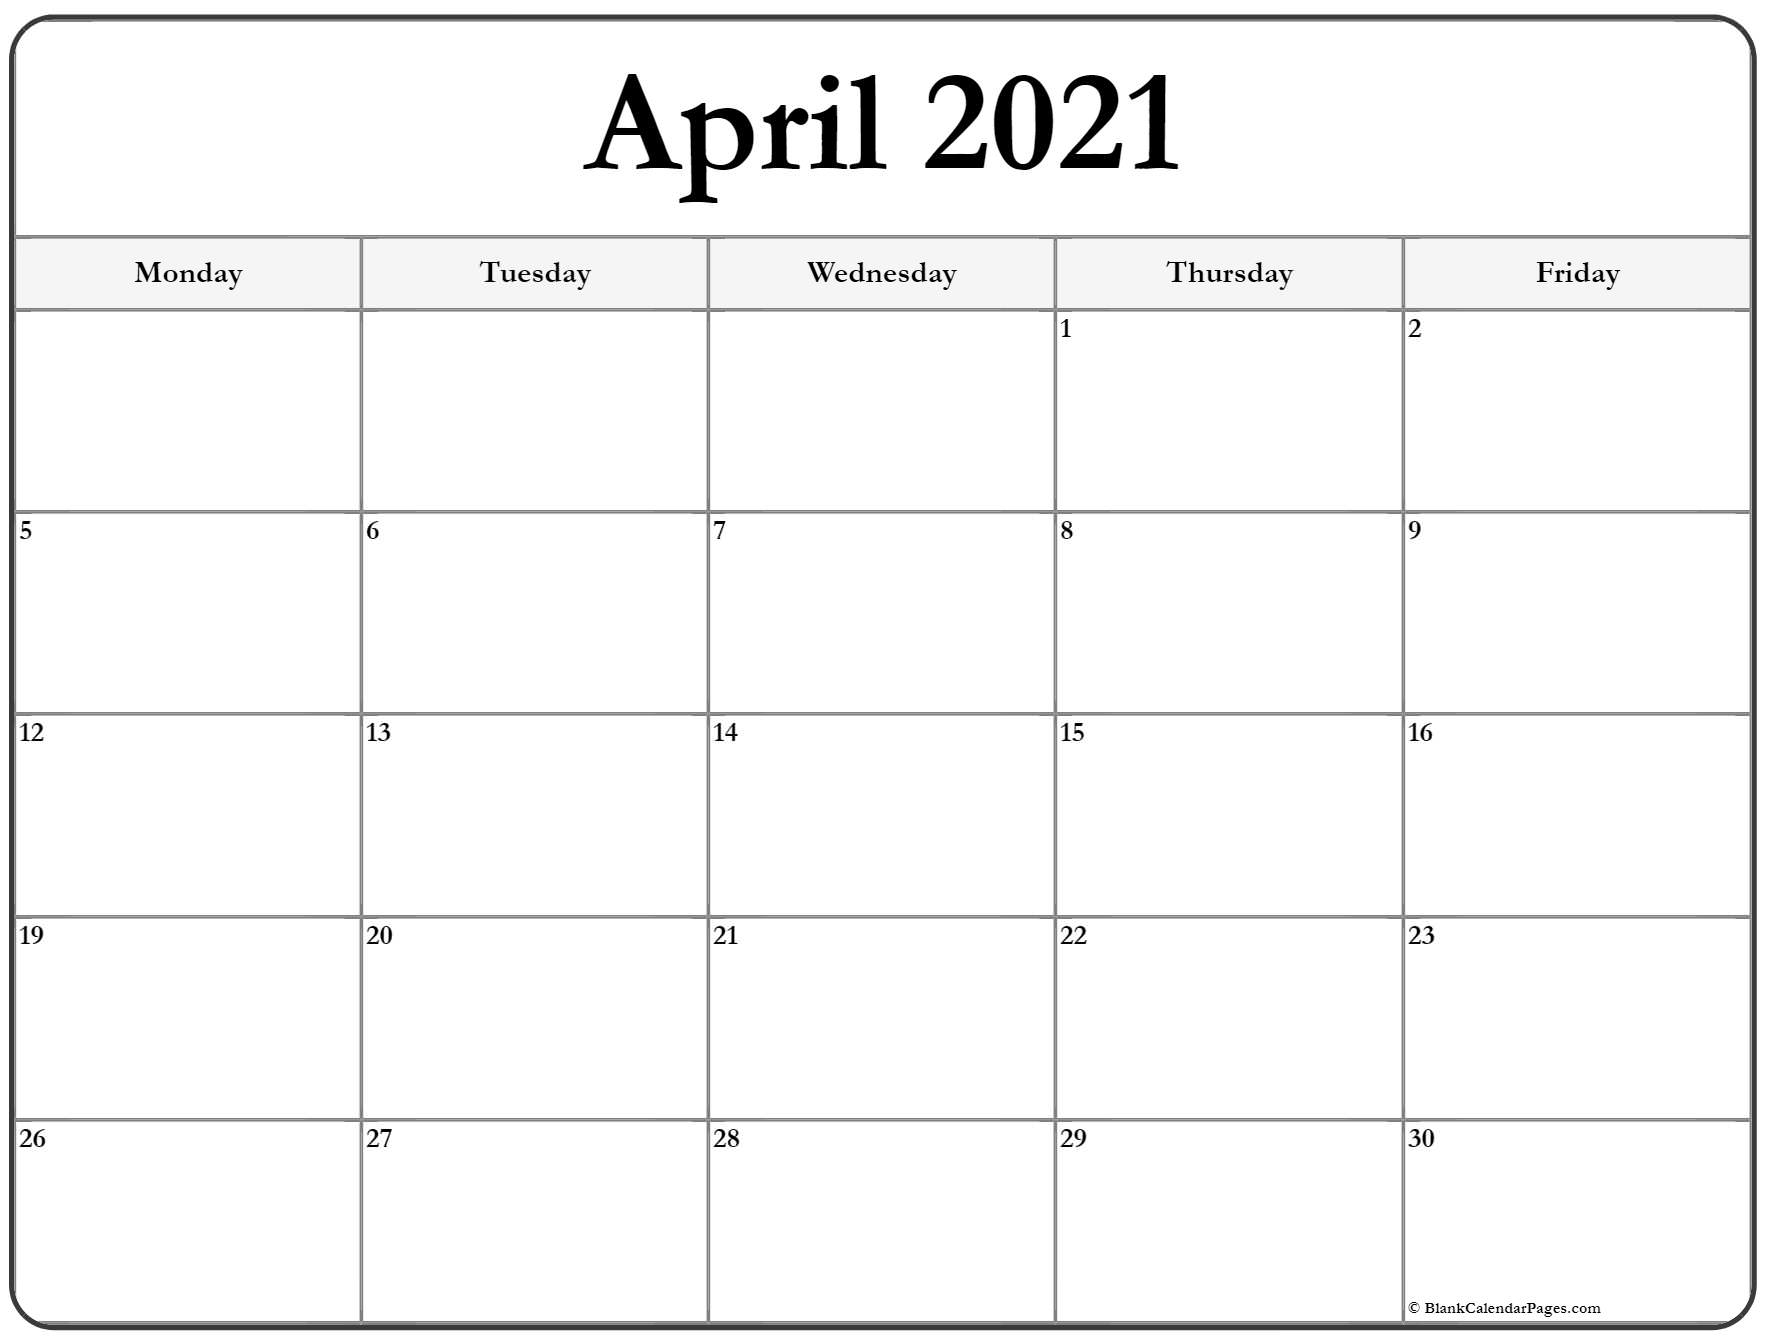 April 2021 Monday Calendar | Monday To Sunday